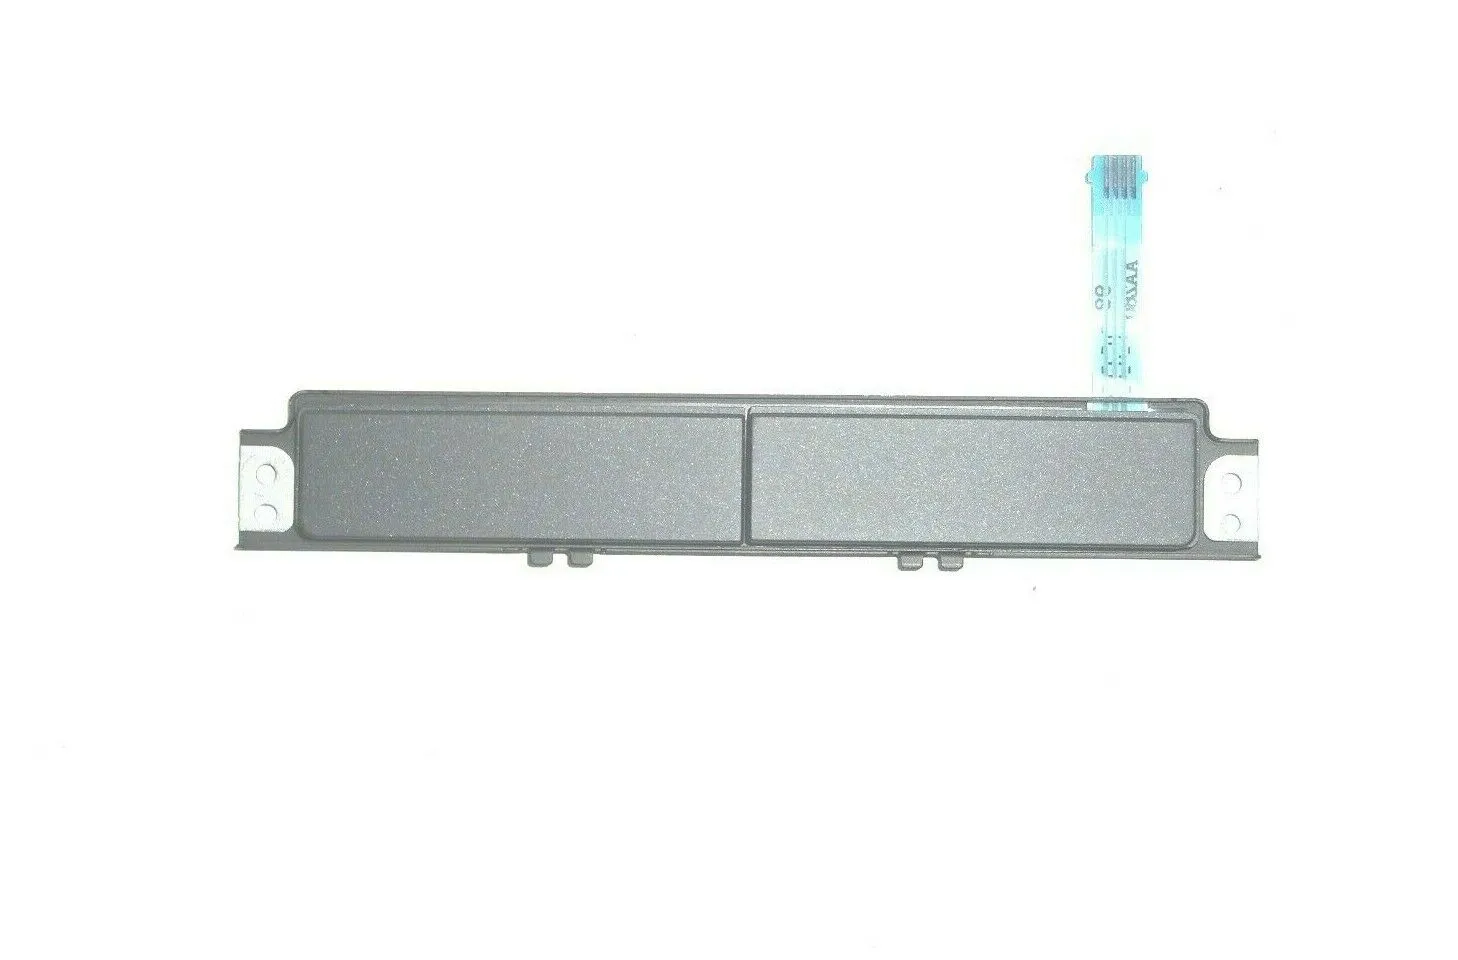 Tasti del touchpad del computer portatile originale per DELL E7470 Touchpad pulsante sinistro destro LR pulsante A151E1 CN-A151E1